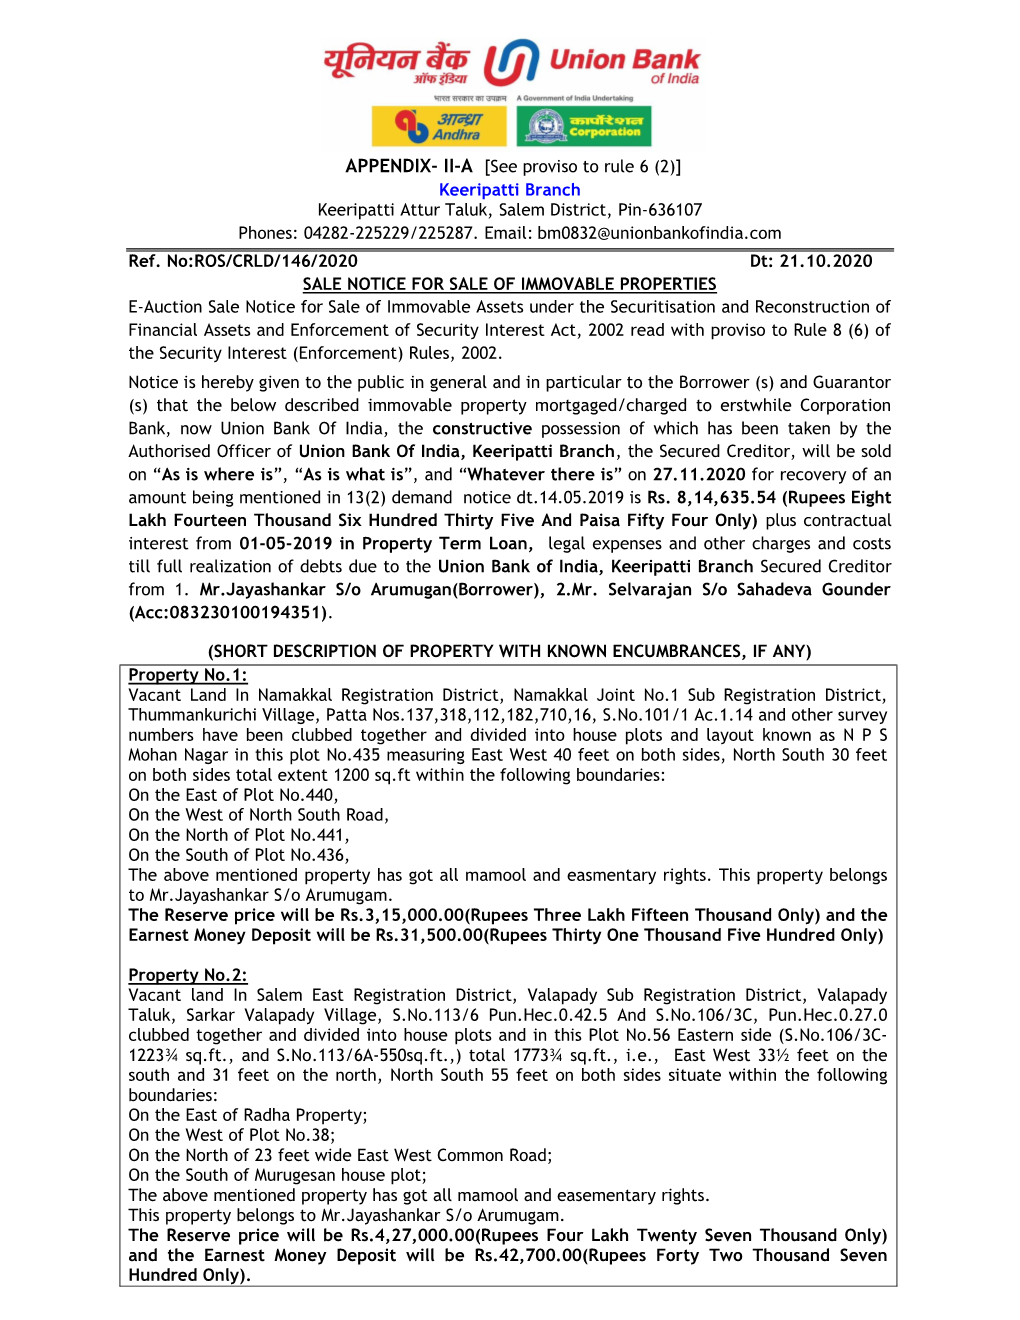 APPENDIX- II-A [See Proviso to Rule 6 (2)] Keeripatti Branch Keeripatti Attur Taluk, Salem District, Pin-636107 Phones: 04282-225229/225287